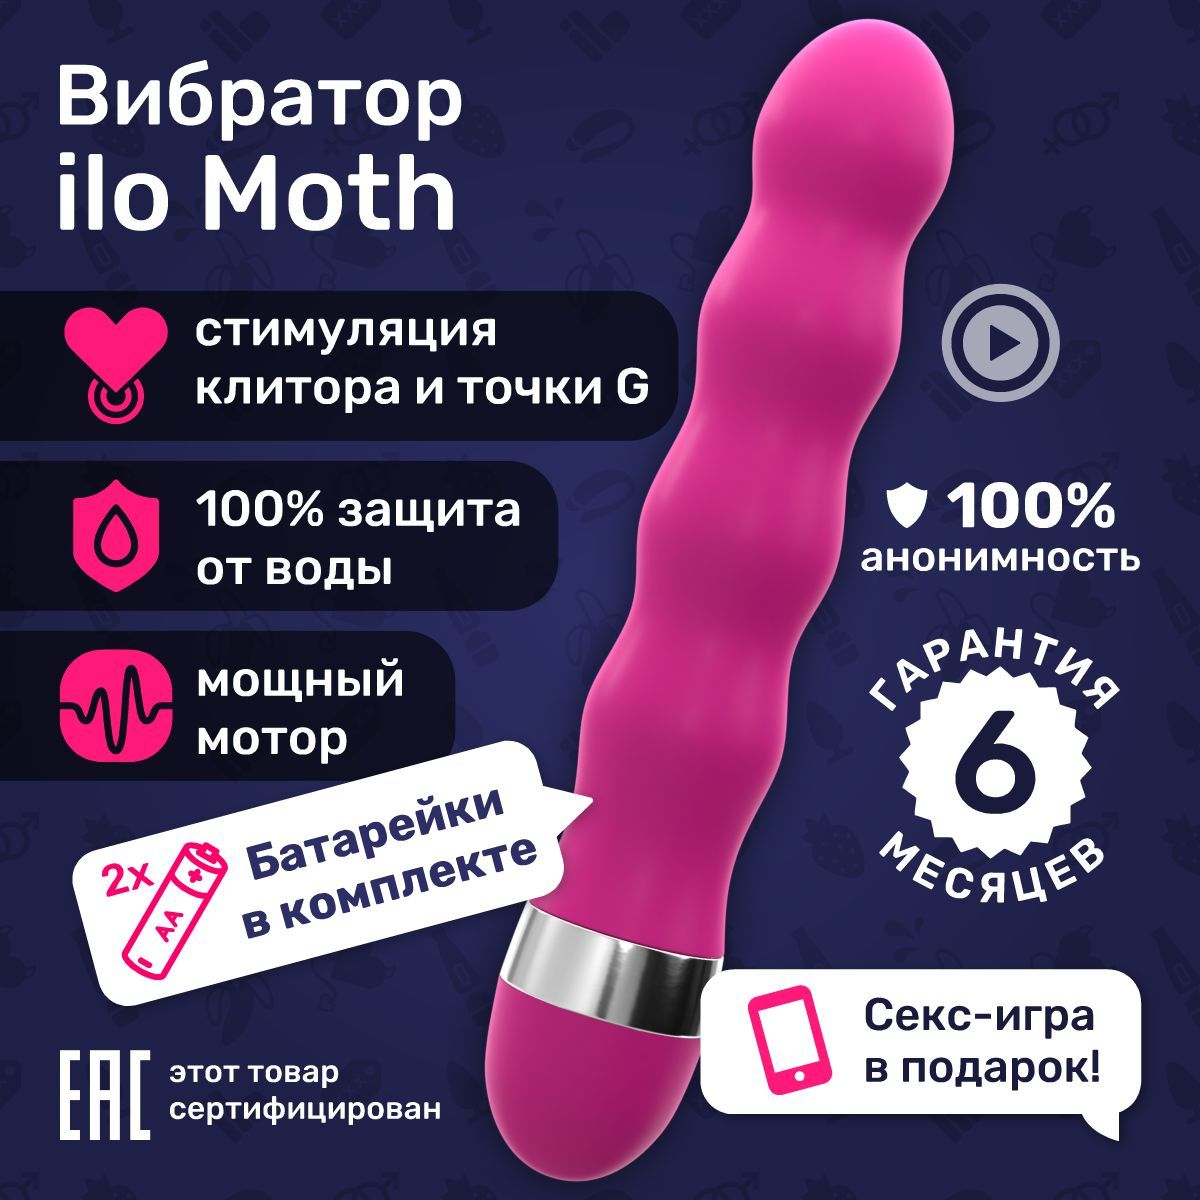 Инструкция: как использовать вибратор - Новости - ru